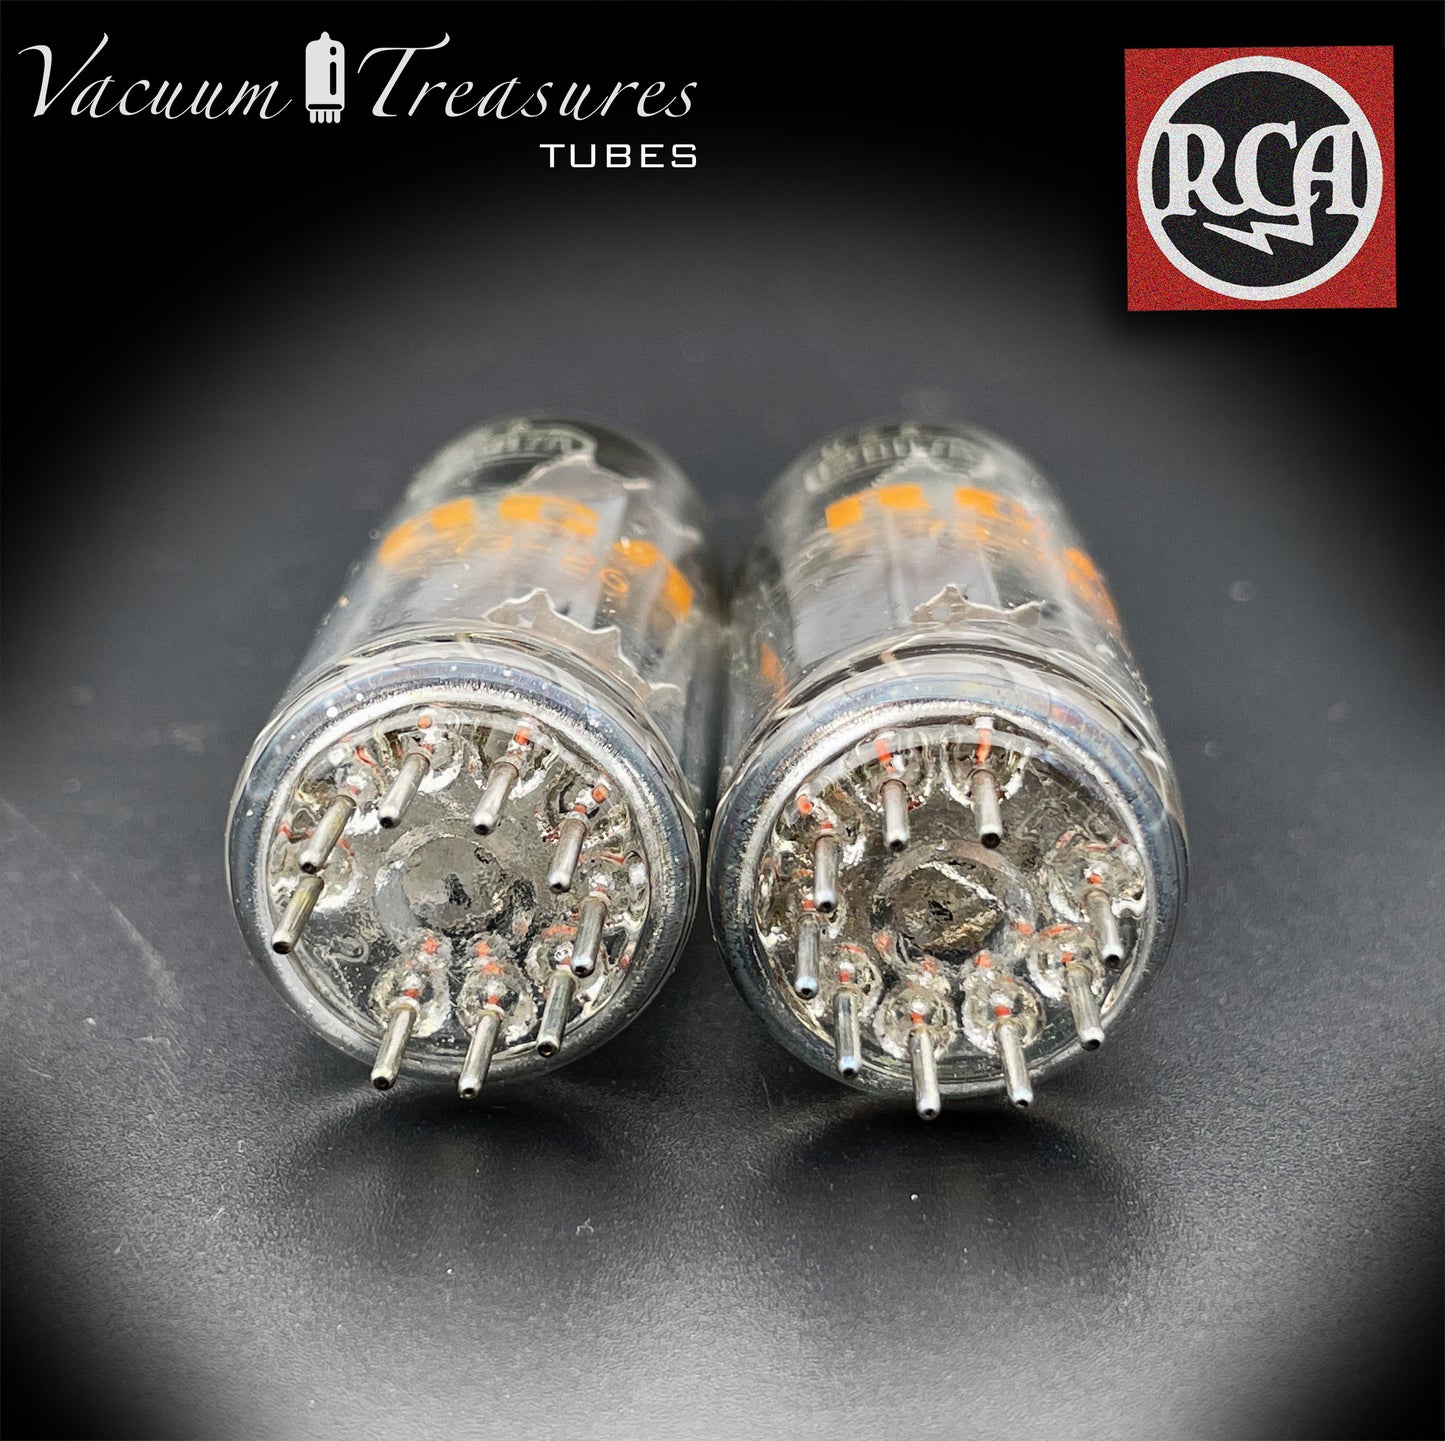 12BH7 A RCA plaques grises O Getter paires de tubes assortis fabriqués aux États-Unis '73